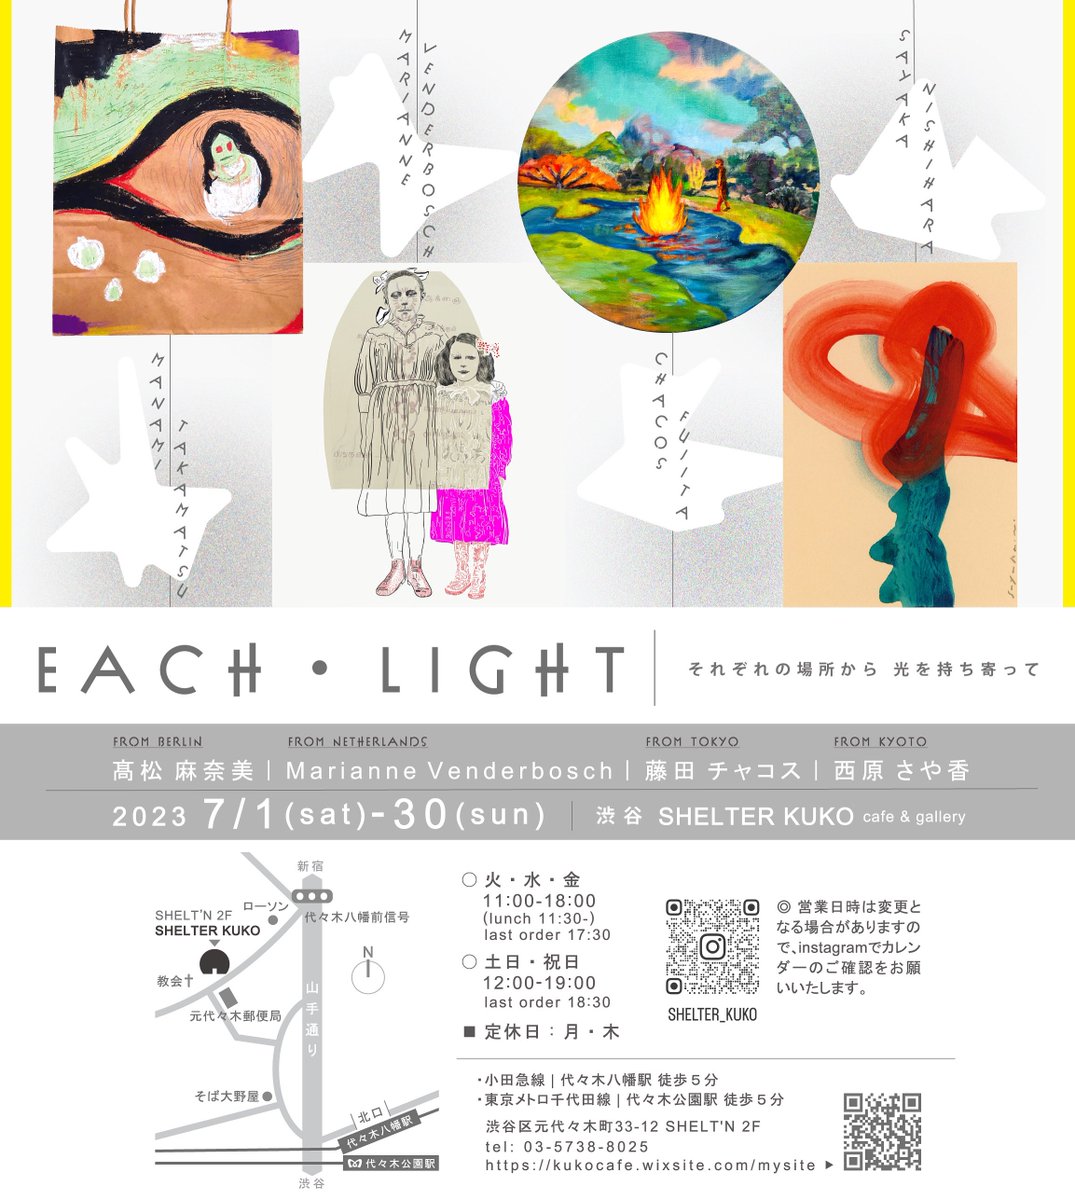 グループ展
'EACH・LIGHT'
■2023/ 7/1(sat)〜7/30(sun)
at渋谷shelter KUKO cafe&gallery

🌟KUKOさんでは、美味しいランチやお洒落なドリンクの数々が楽しめます。私も今から楽しみです。
🍽メニュー▼
kukocafe.wixsite.com/mysite/menu